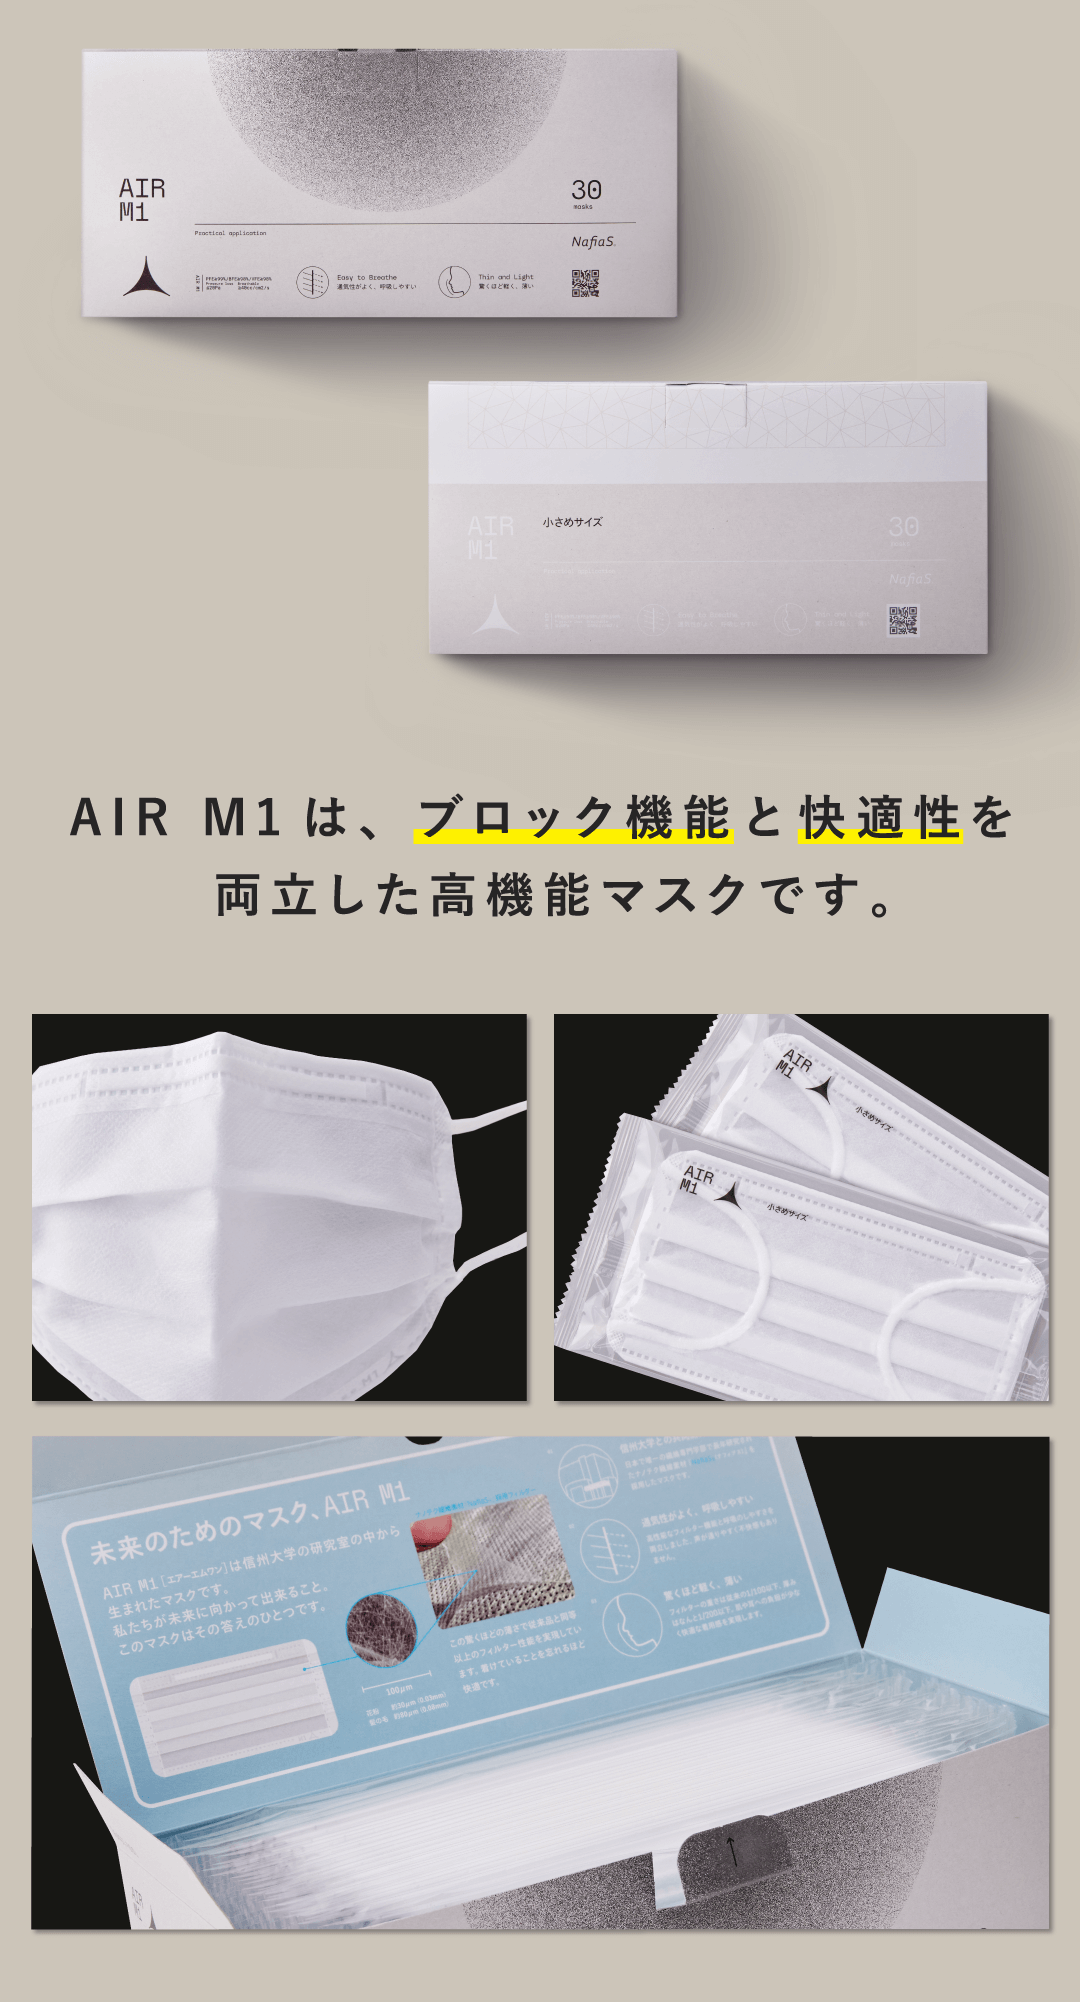 AIR M1は、ブロック機能と快適性を両立した高機能マスクです。